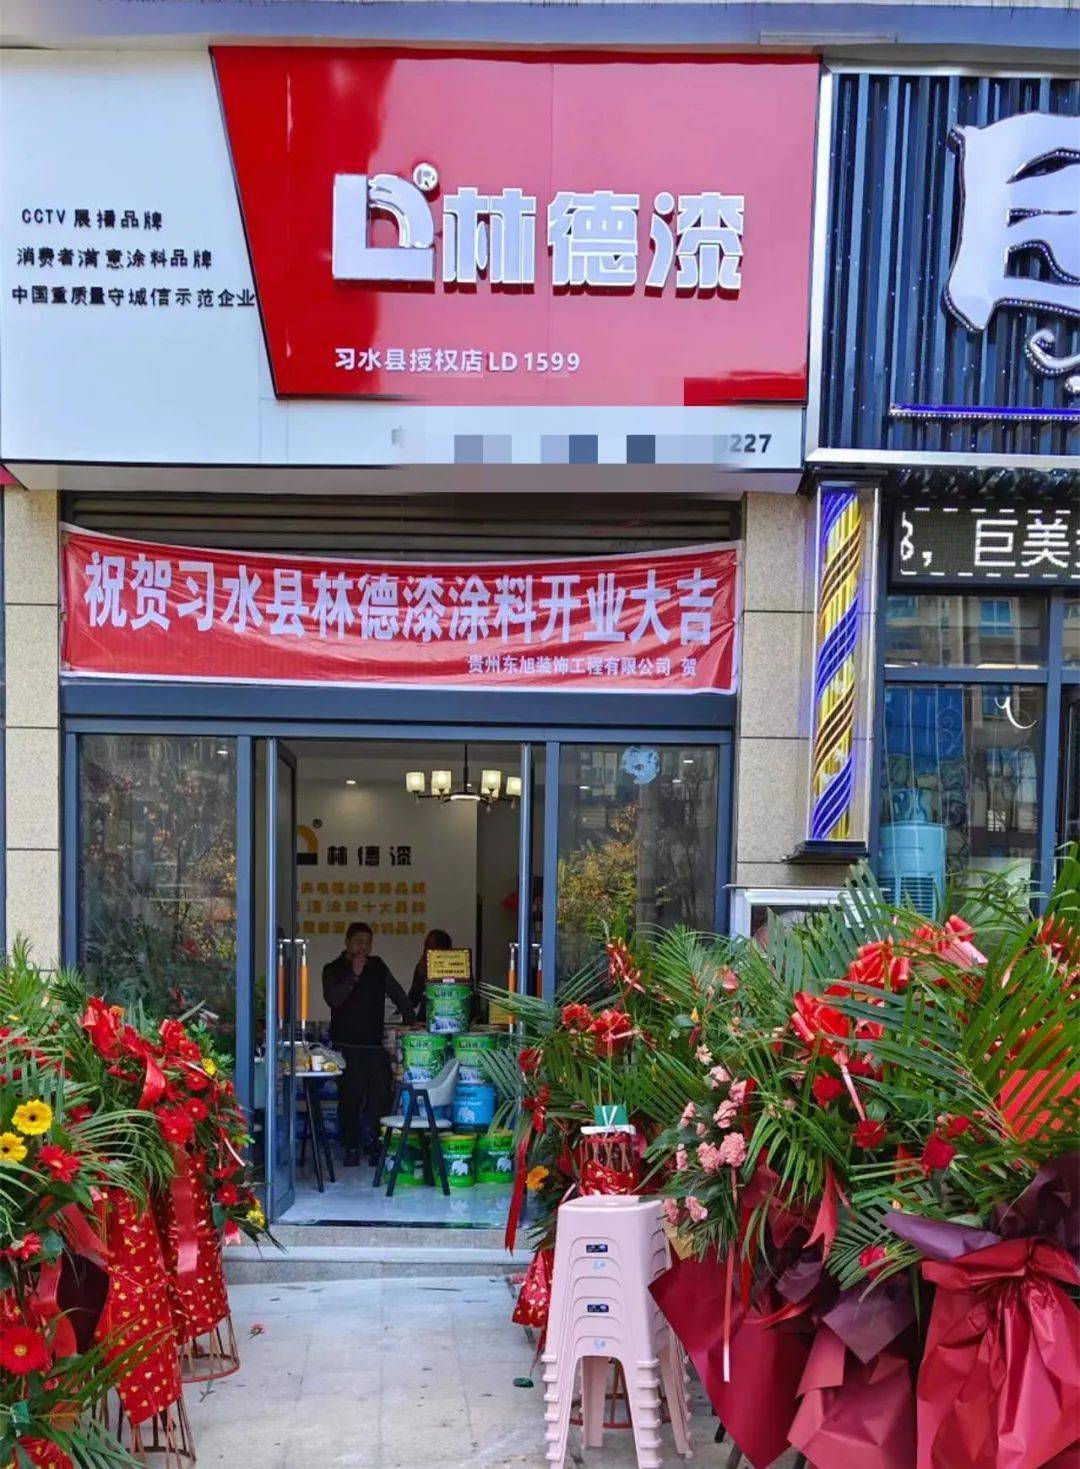 林德漆云南马关服务中心,贵州习水服务中心相继开业